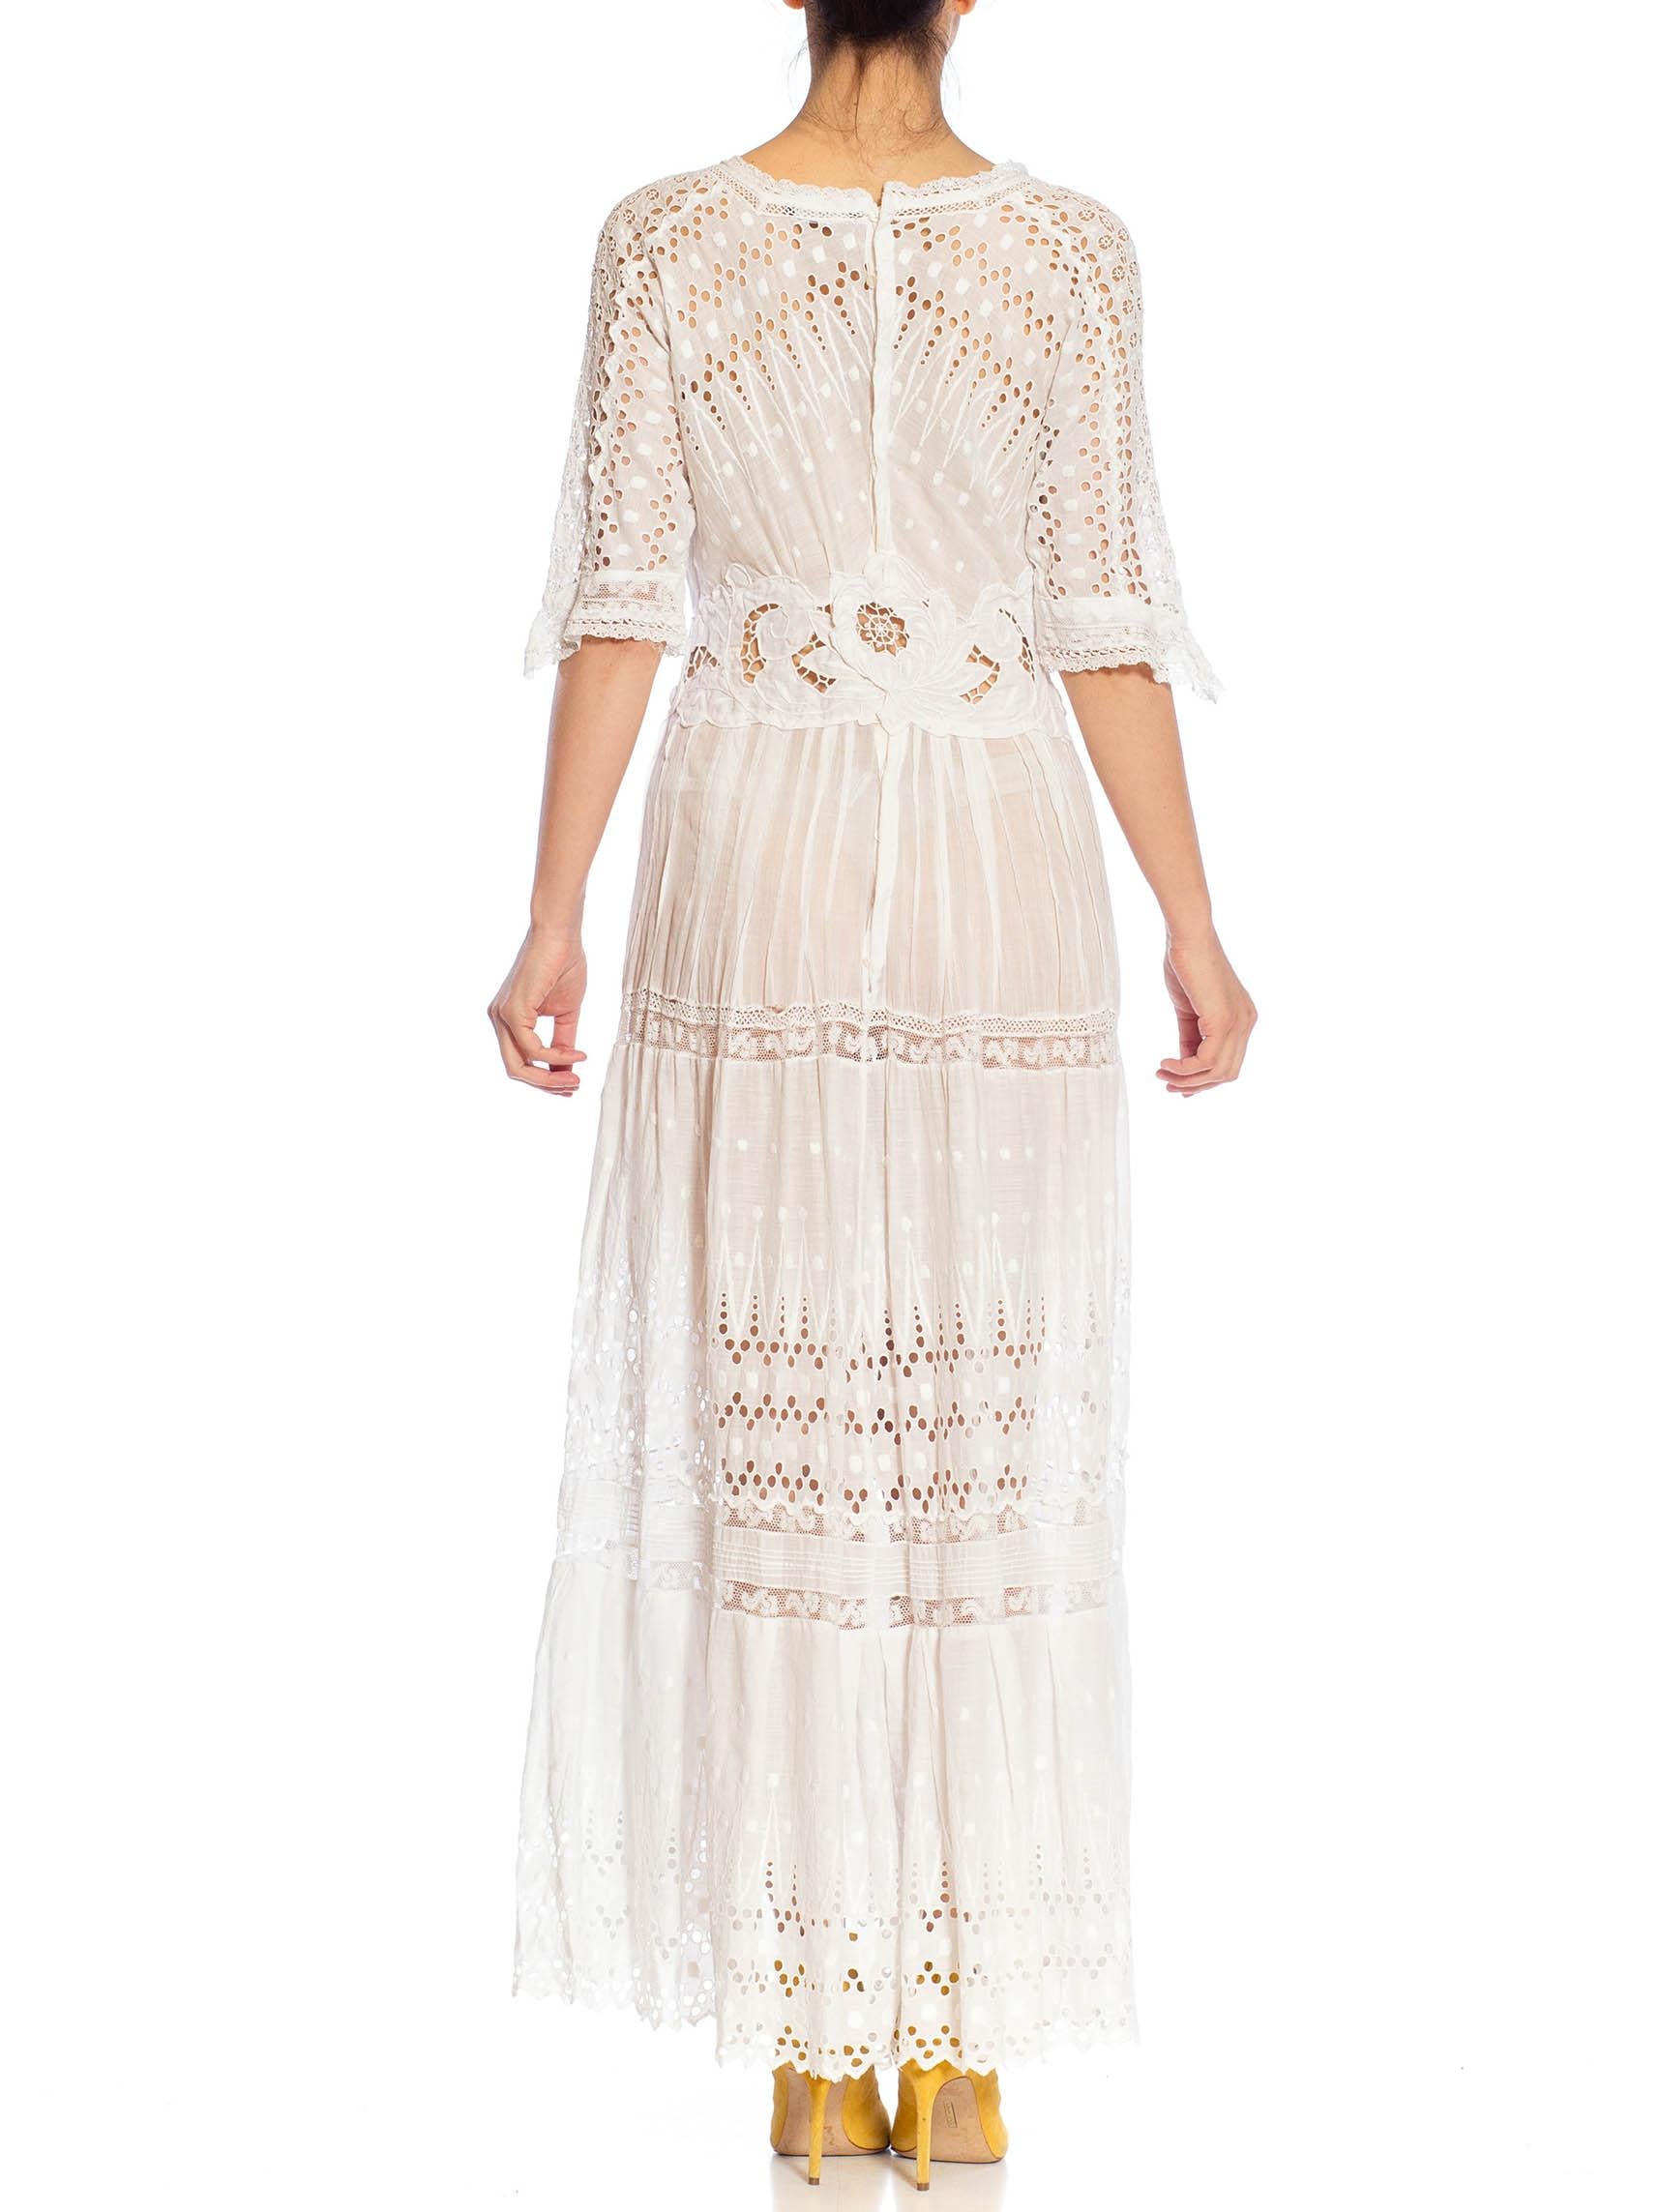 MORPHEW ATELIER White Organic Cotton Antique Lace Dress For Sale 2